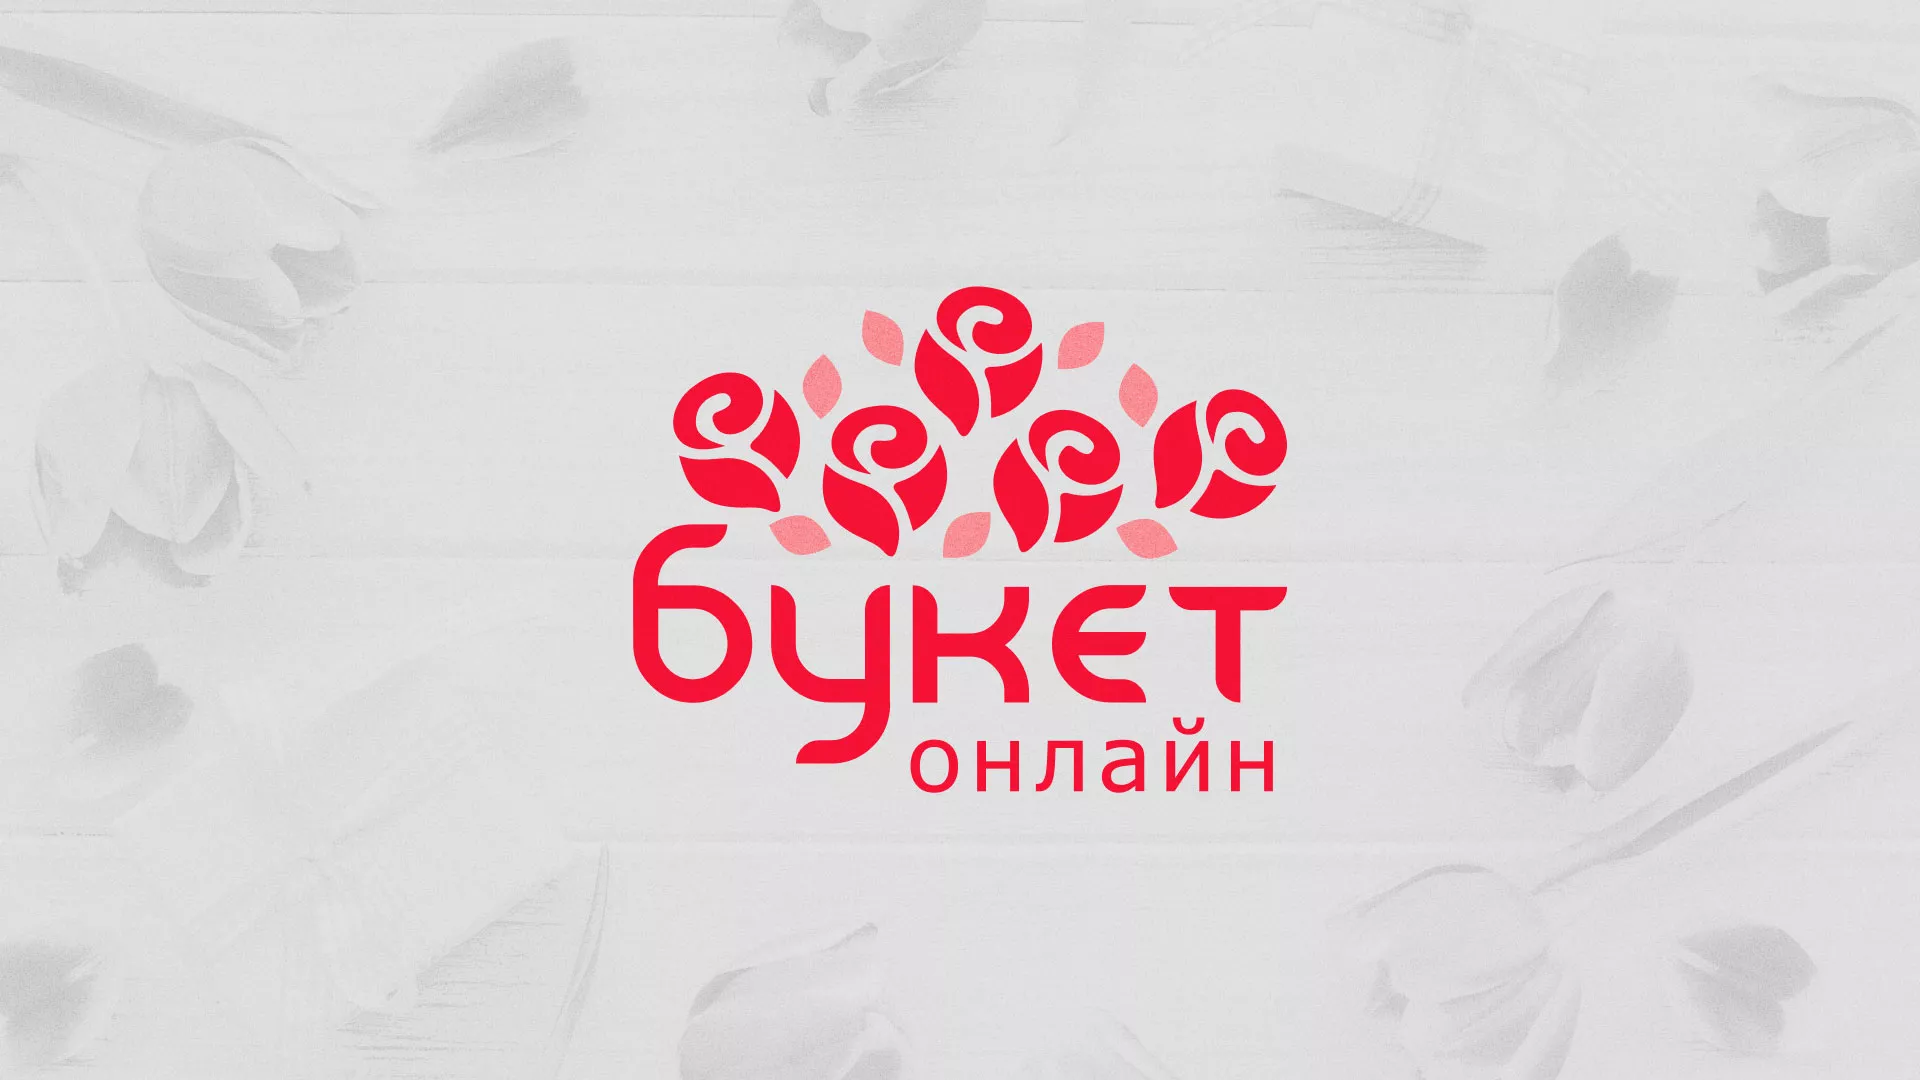 Создание интернет-магазина «Букет-онлайн» по цветам в Краснодаре